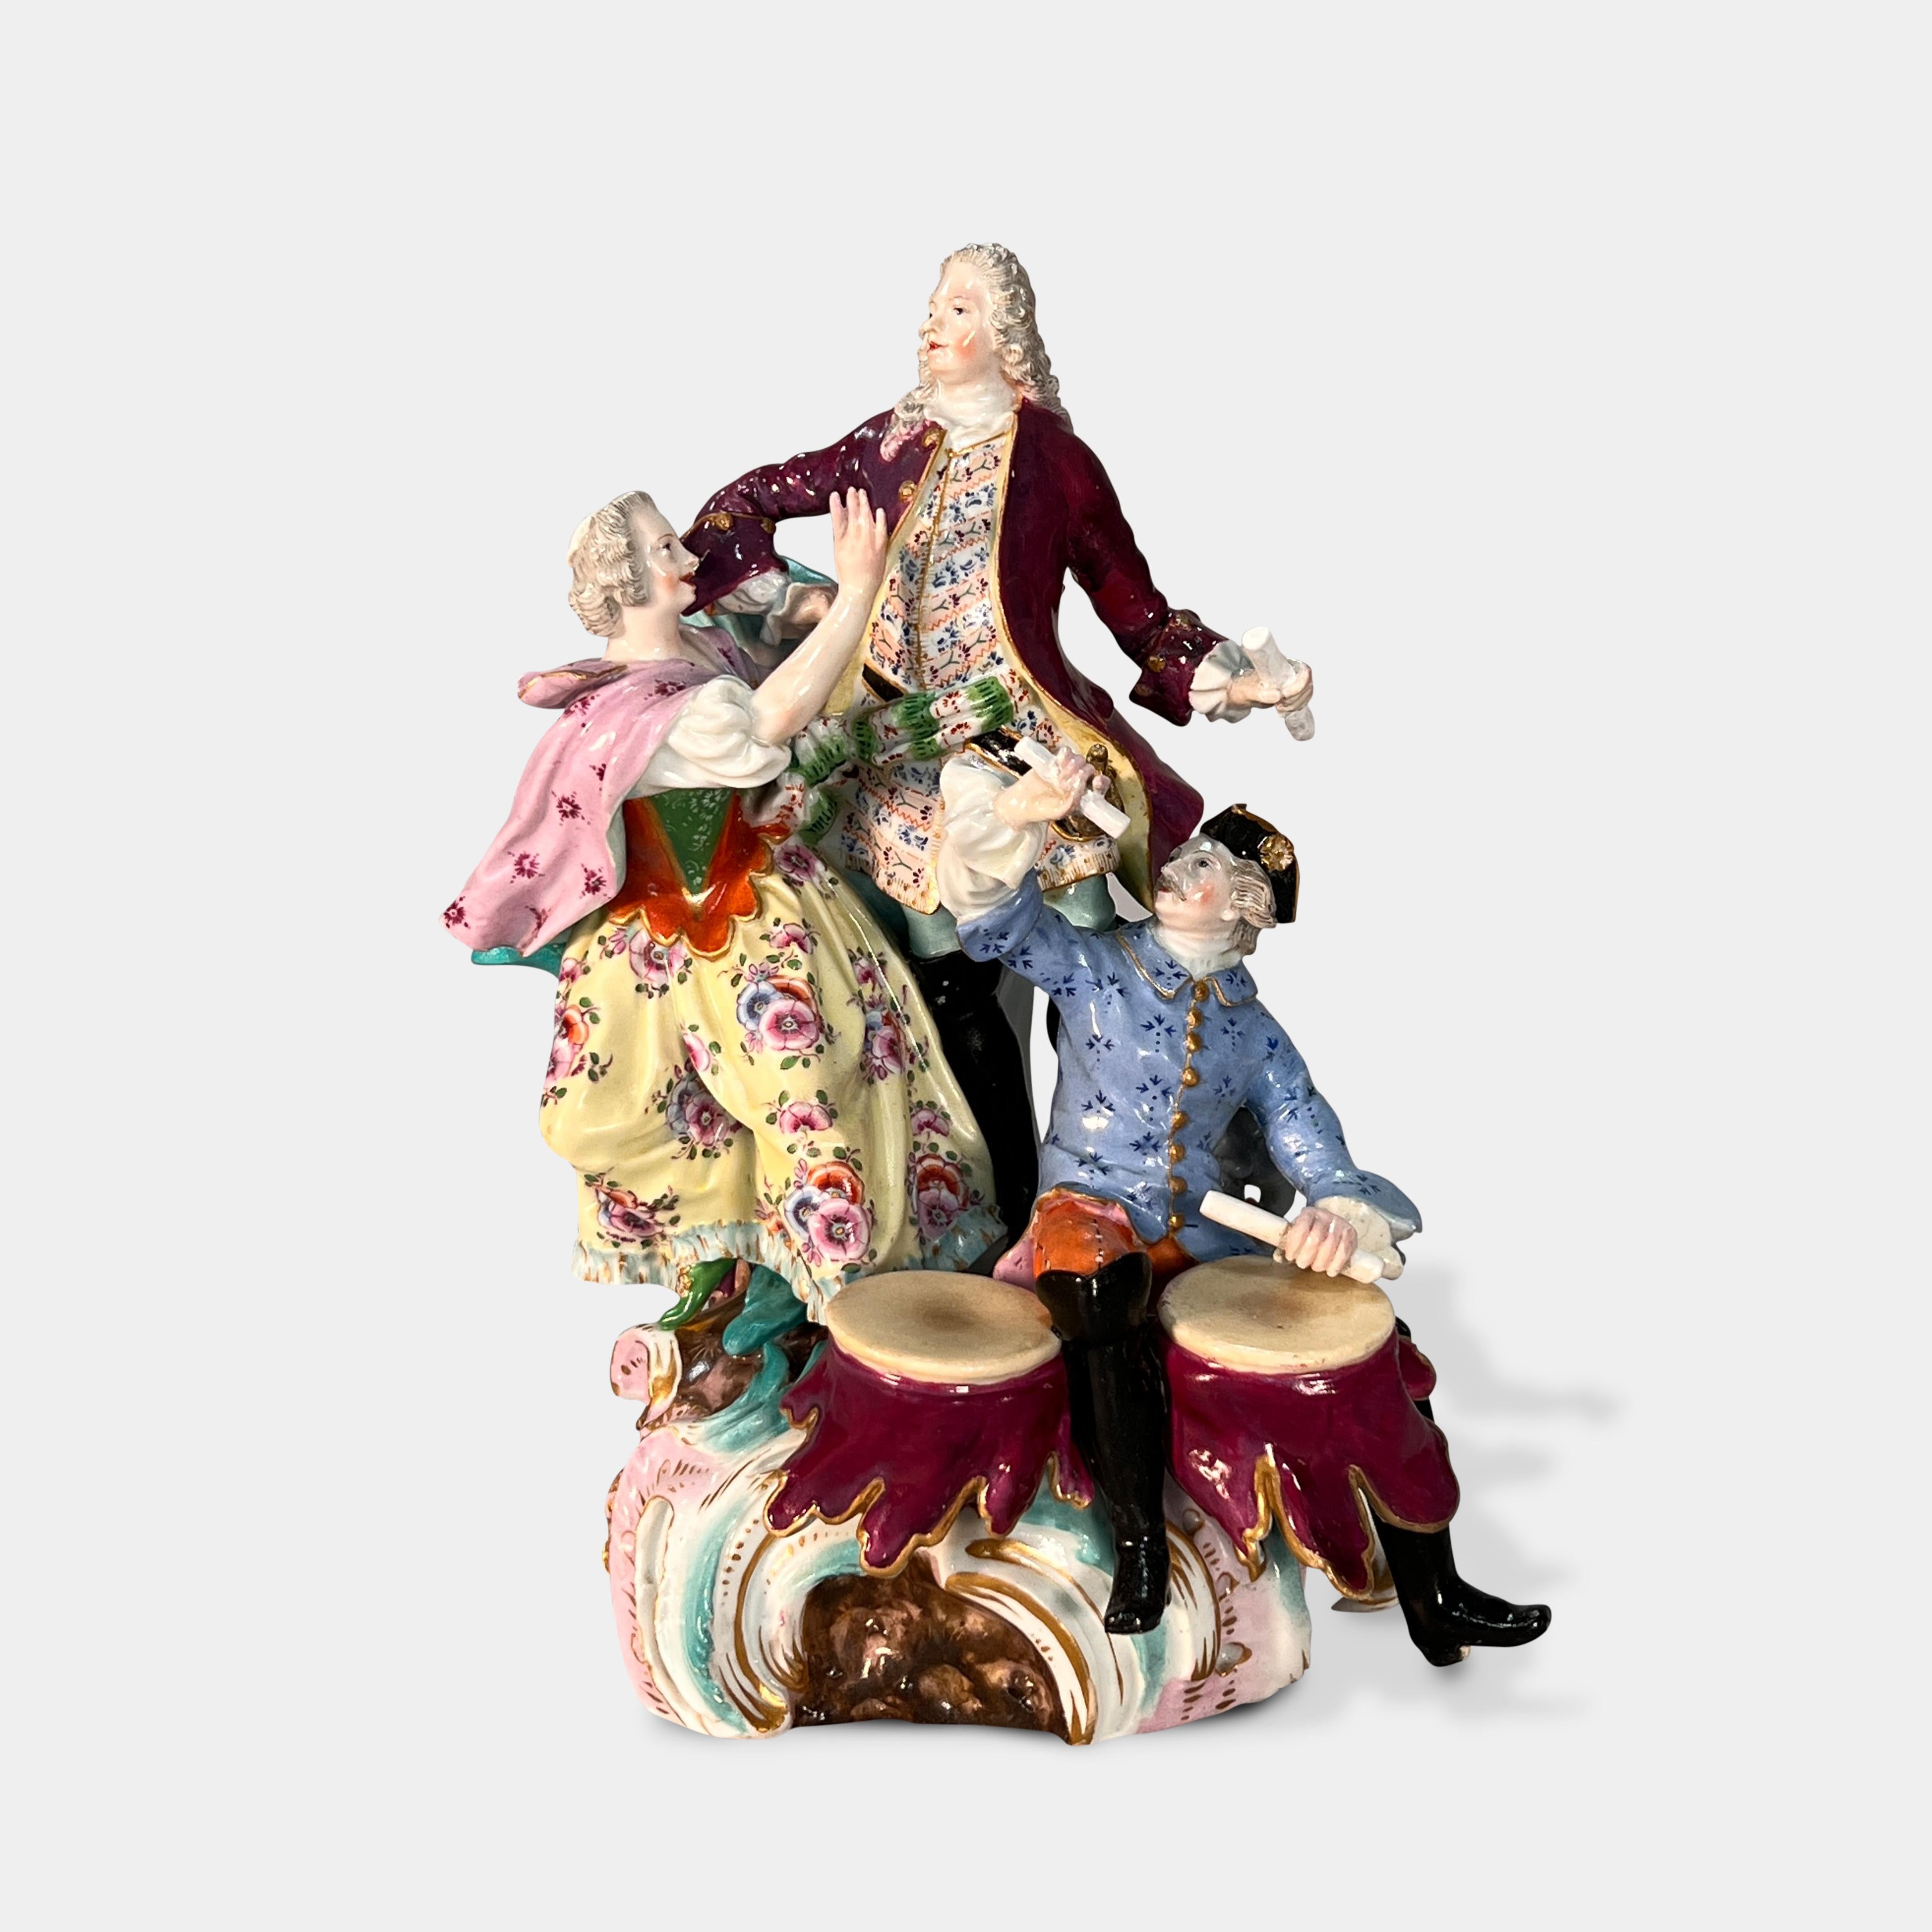 Eine schöne Figurengruppe aus deutschem Meissener Porzellan des 19. Jahrhunderts mit einer stehenden Dame, die einen stehenden Herrn anspricht, und einem Musiker, der zu ihren Füßen sitzt und trommelt.

Ende des 19. Jahrhunderts.

Blaue